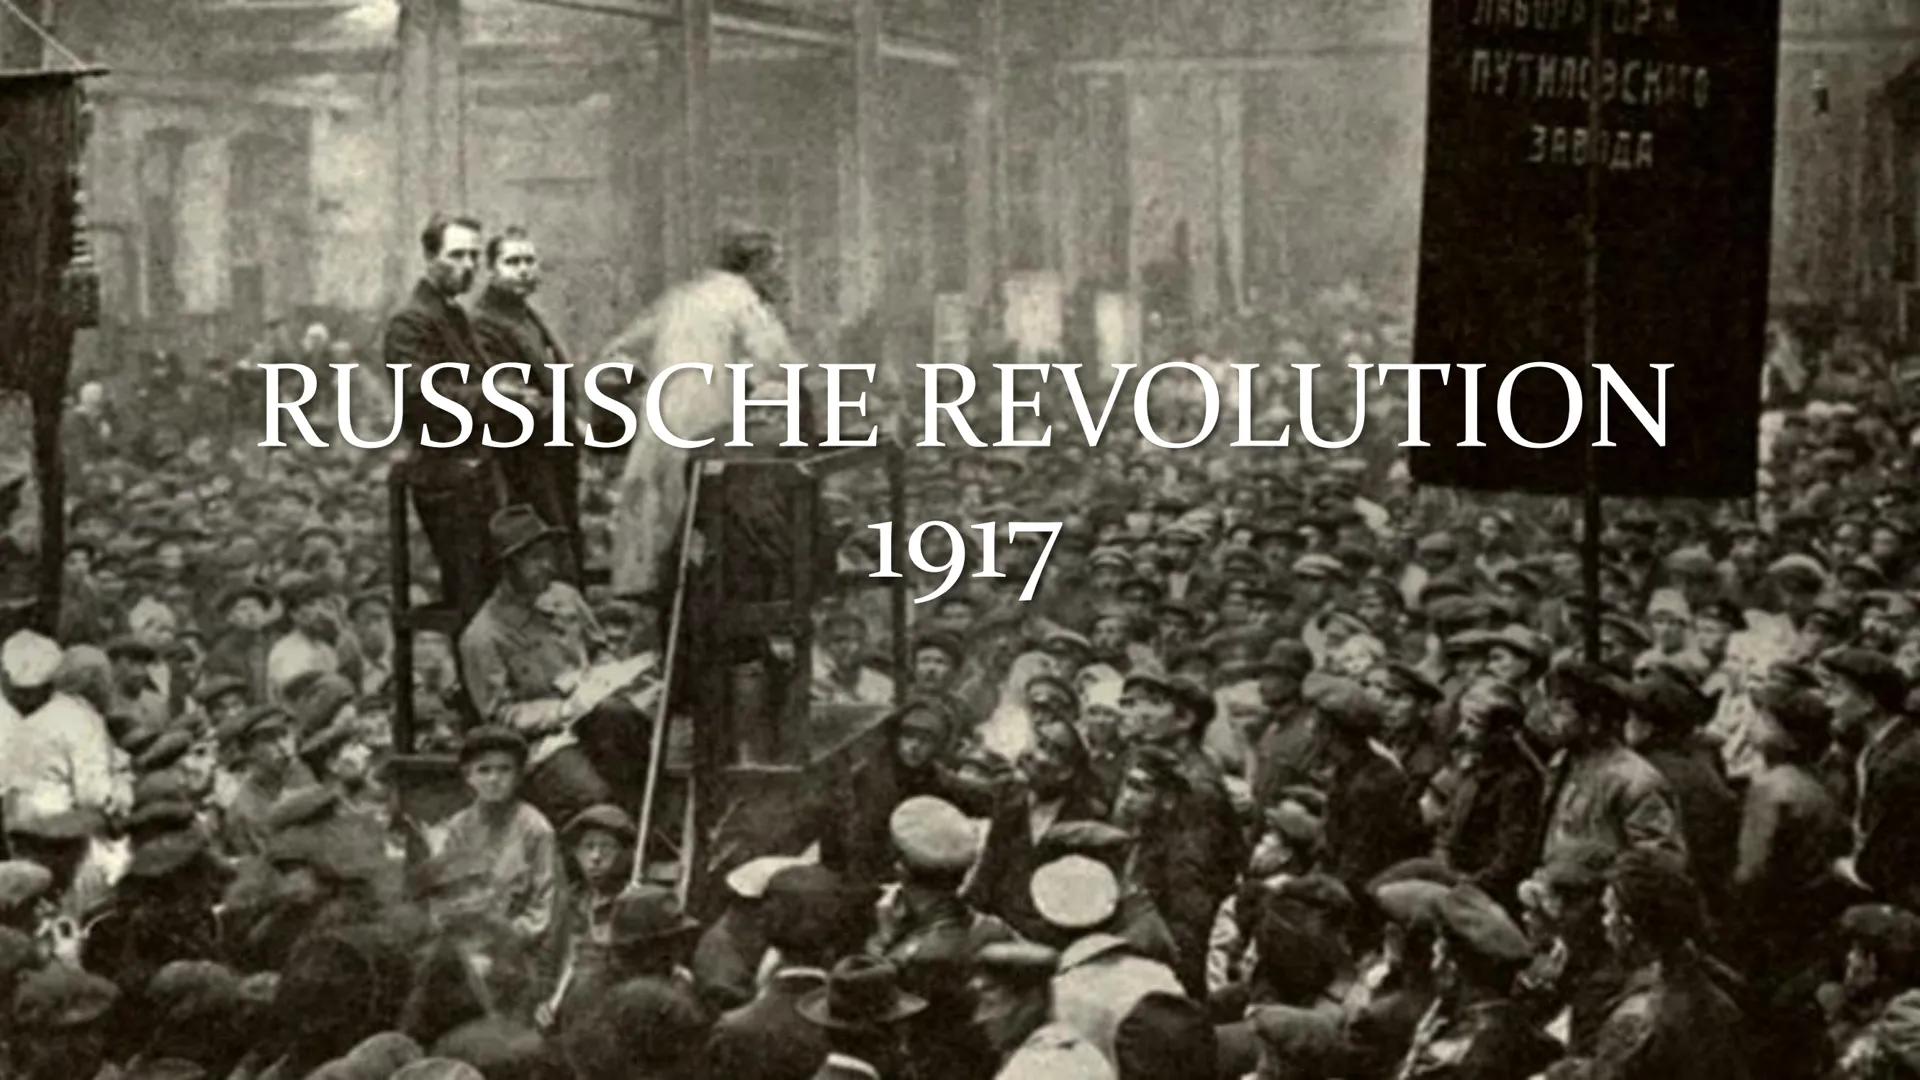 RUSSISCHE REVOLUTION 1917
Gliederung
1. Einstieg
2. Ursachen der Februarrevolution
3. Verlauf Februarrevolution
4. Ergebnisse Februarrevolut